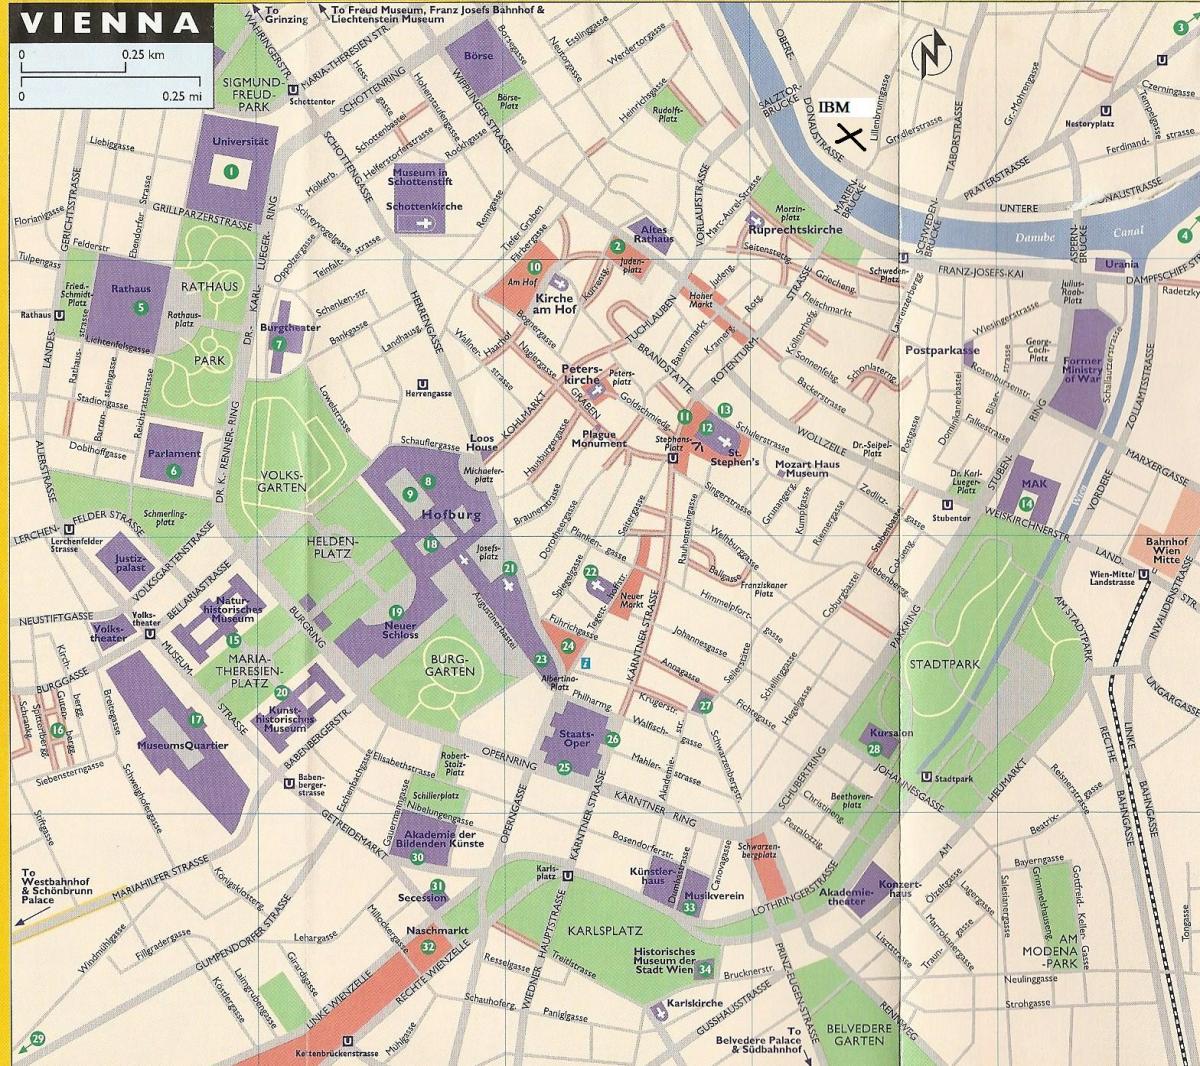 Mapa sklepów w Wiedniu 